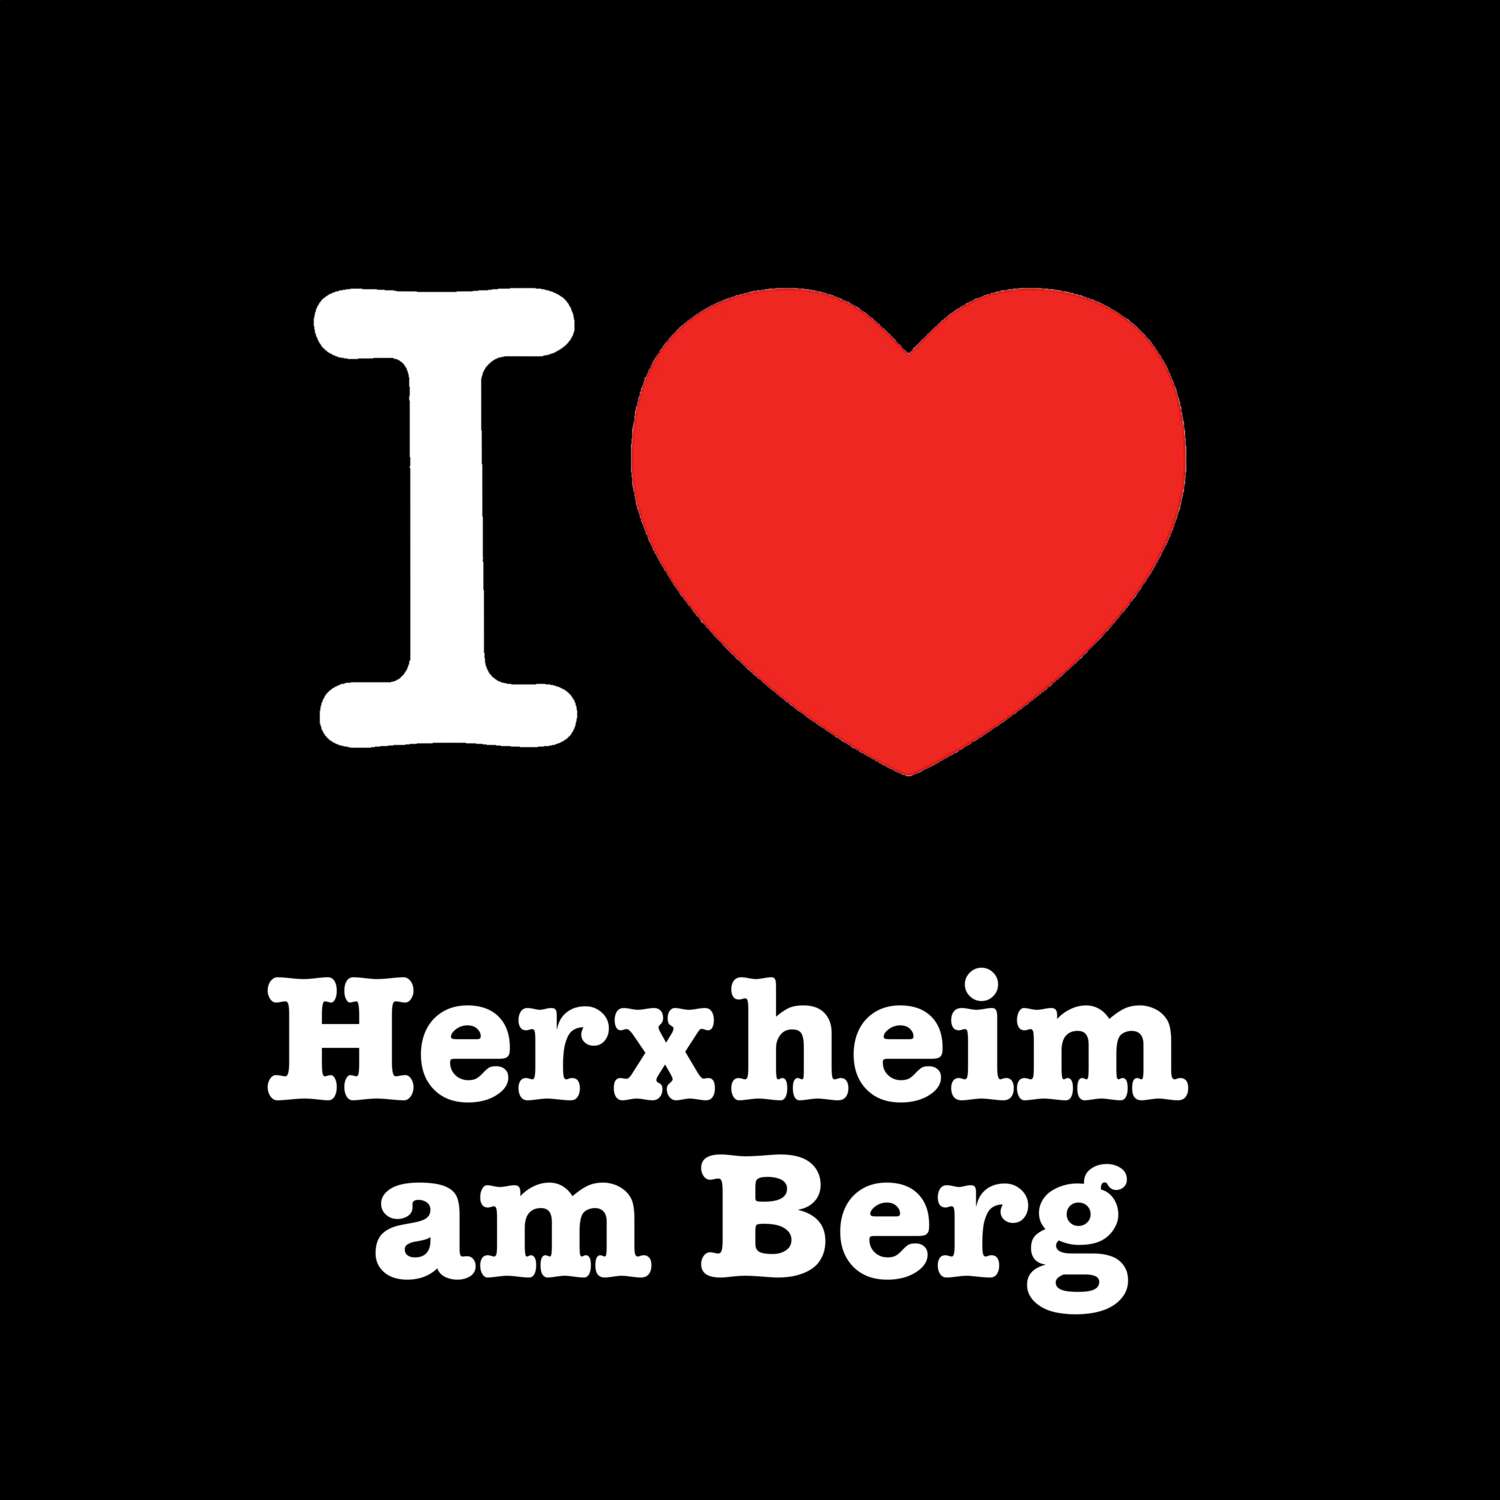 Herxheim am Berg T-Shirt »I love«